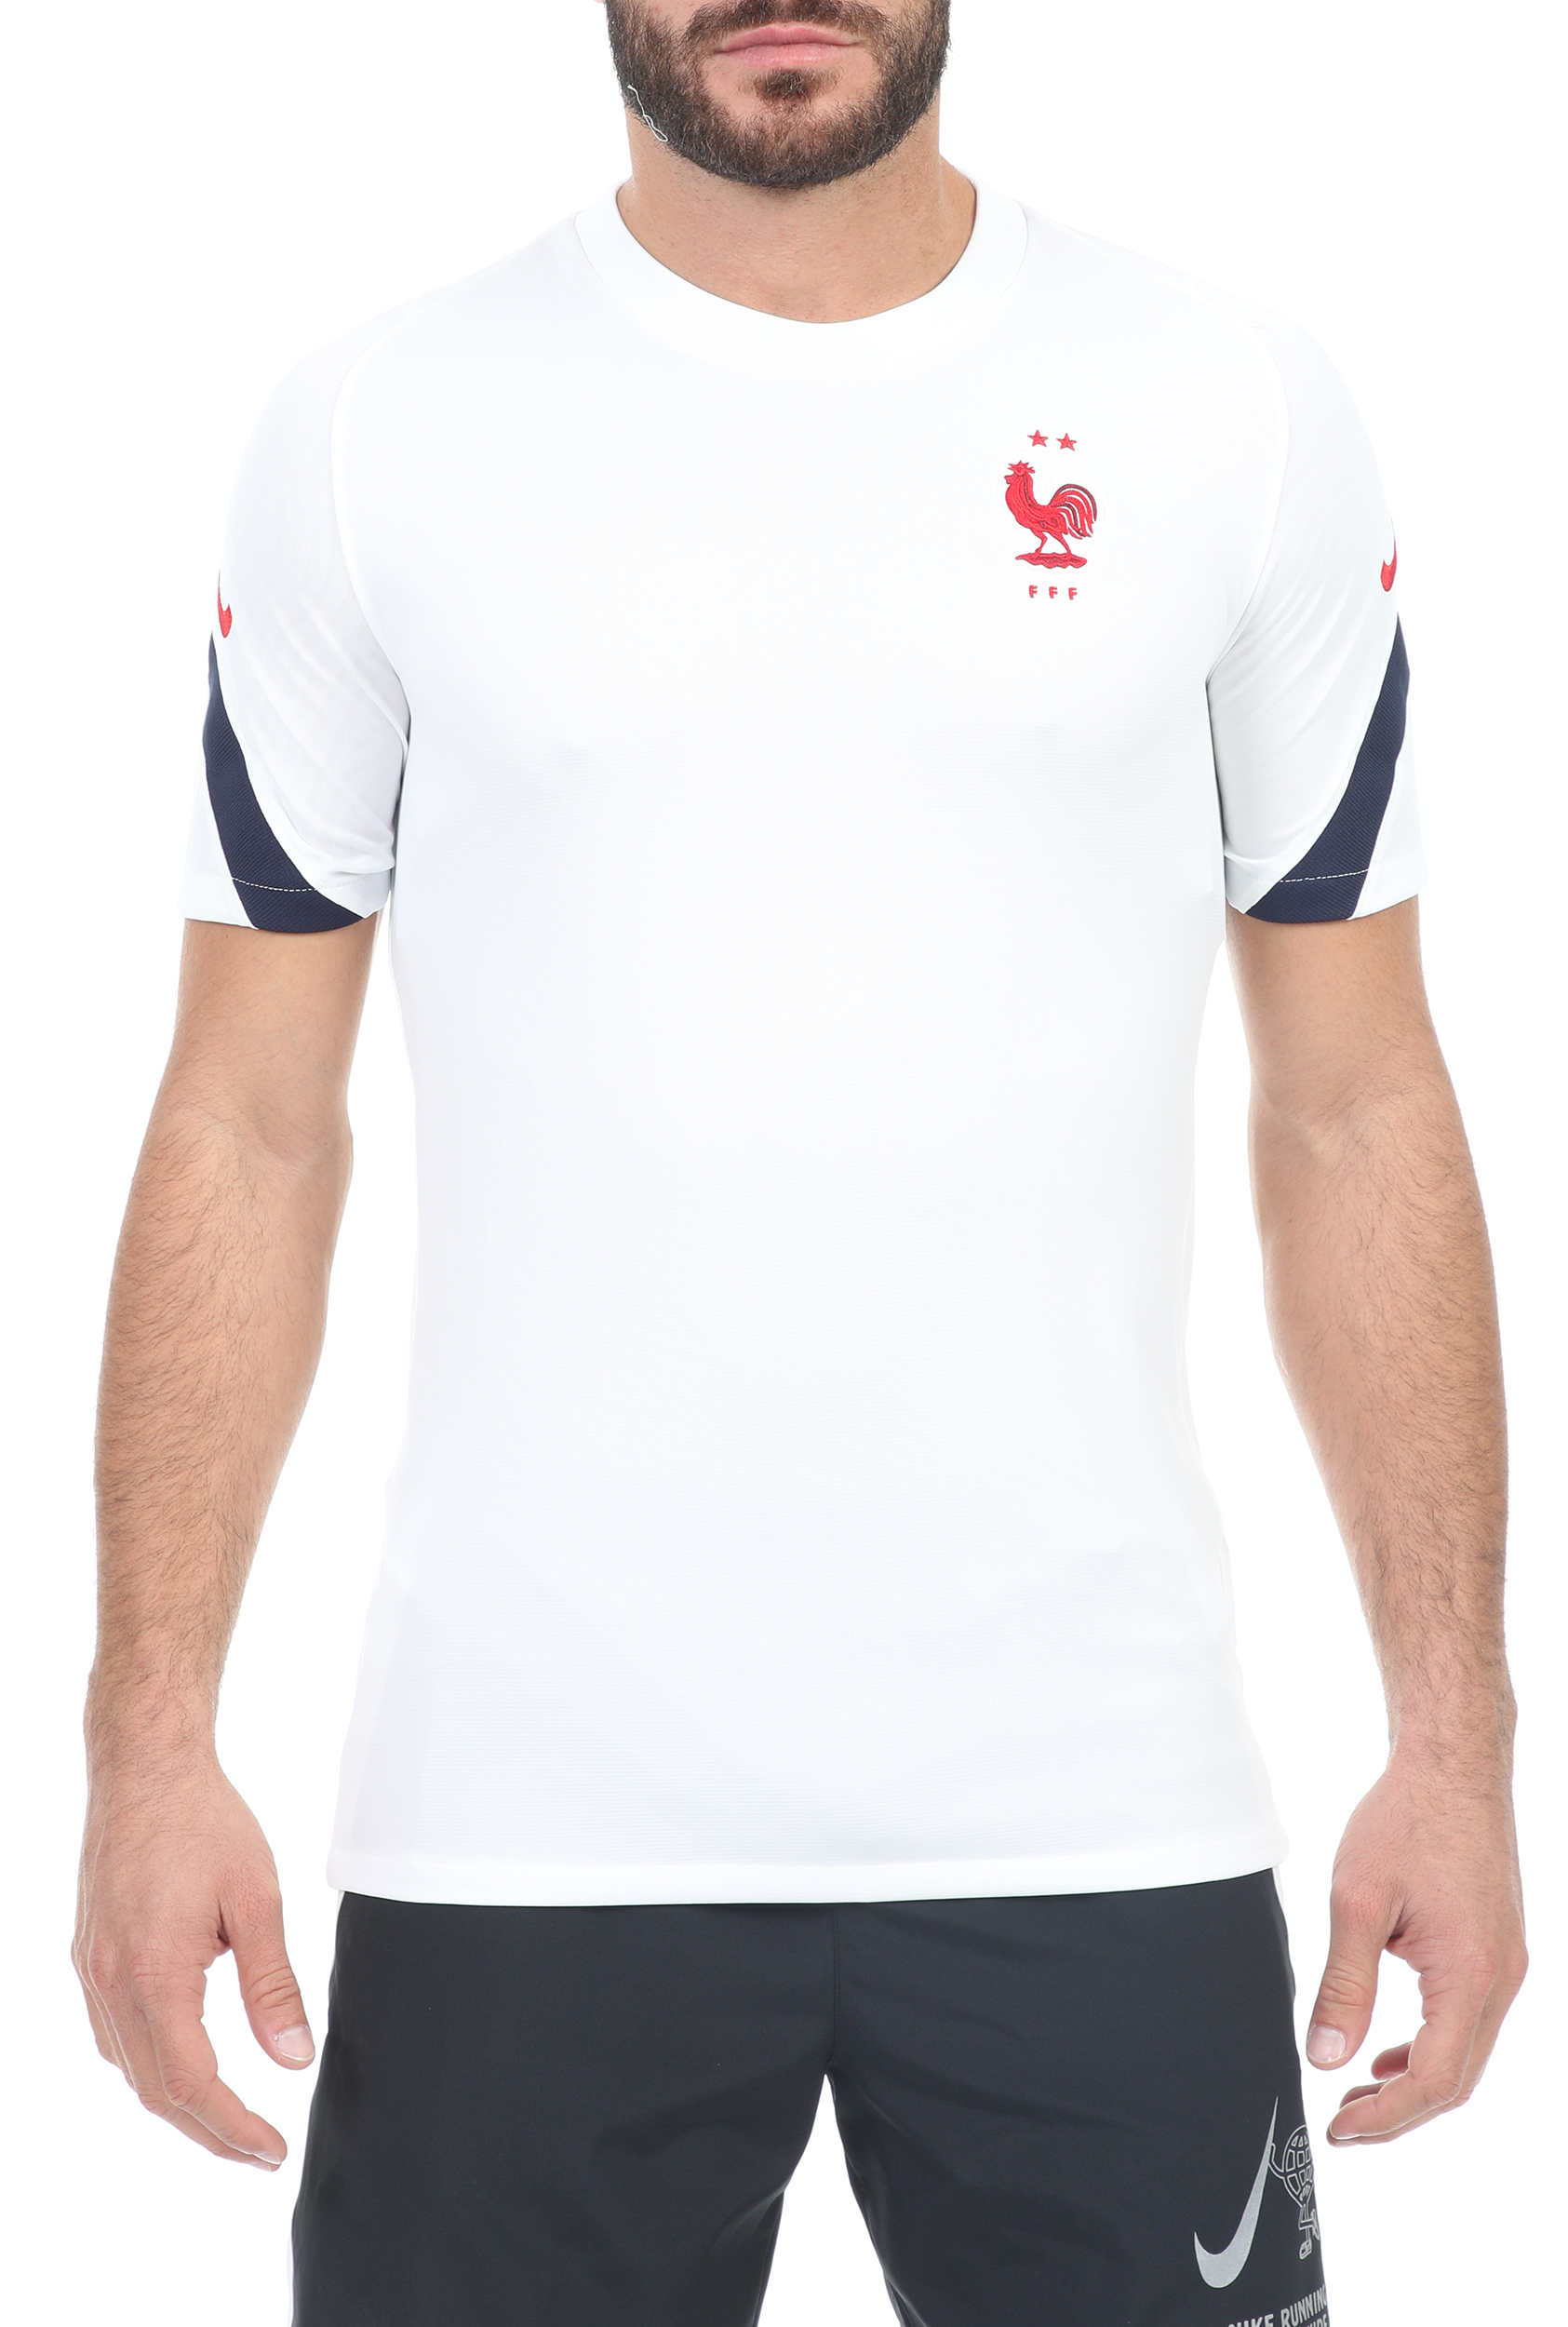 Ανδρικά/Ρούχα/Αθλητικά/T-shirt NIKE - Ανδρική μπλούζα NIKE BRT STRK TOP SS λευκή